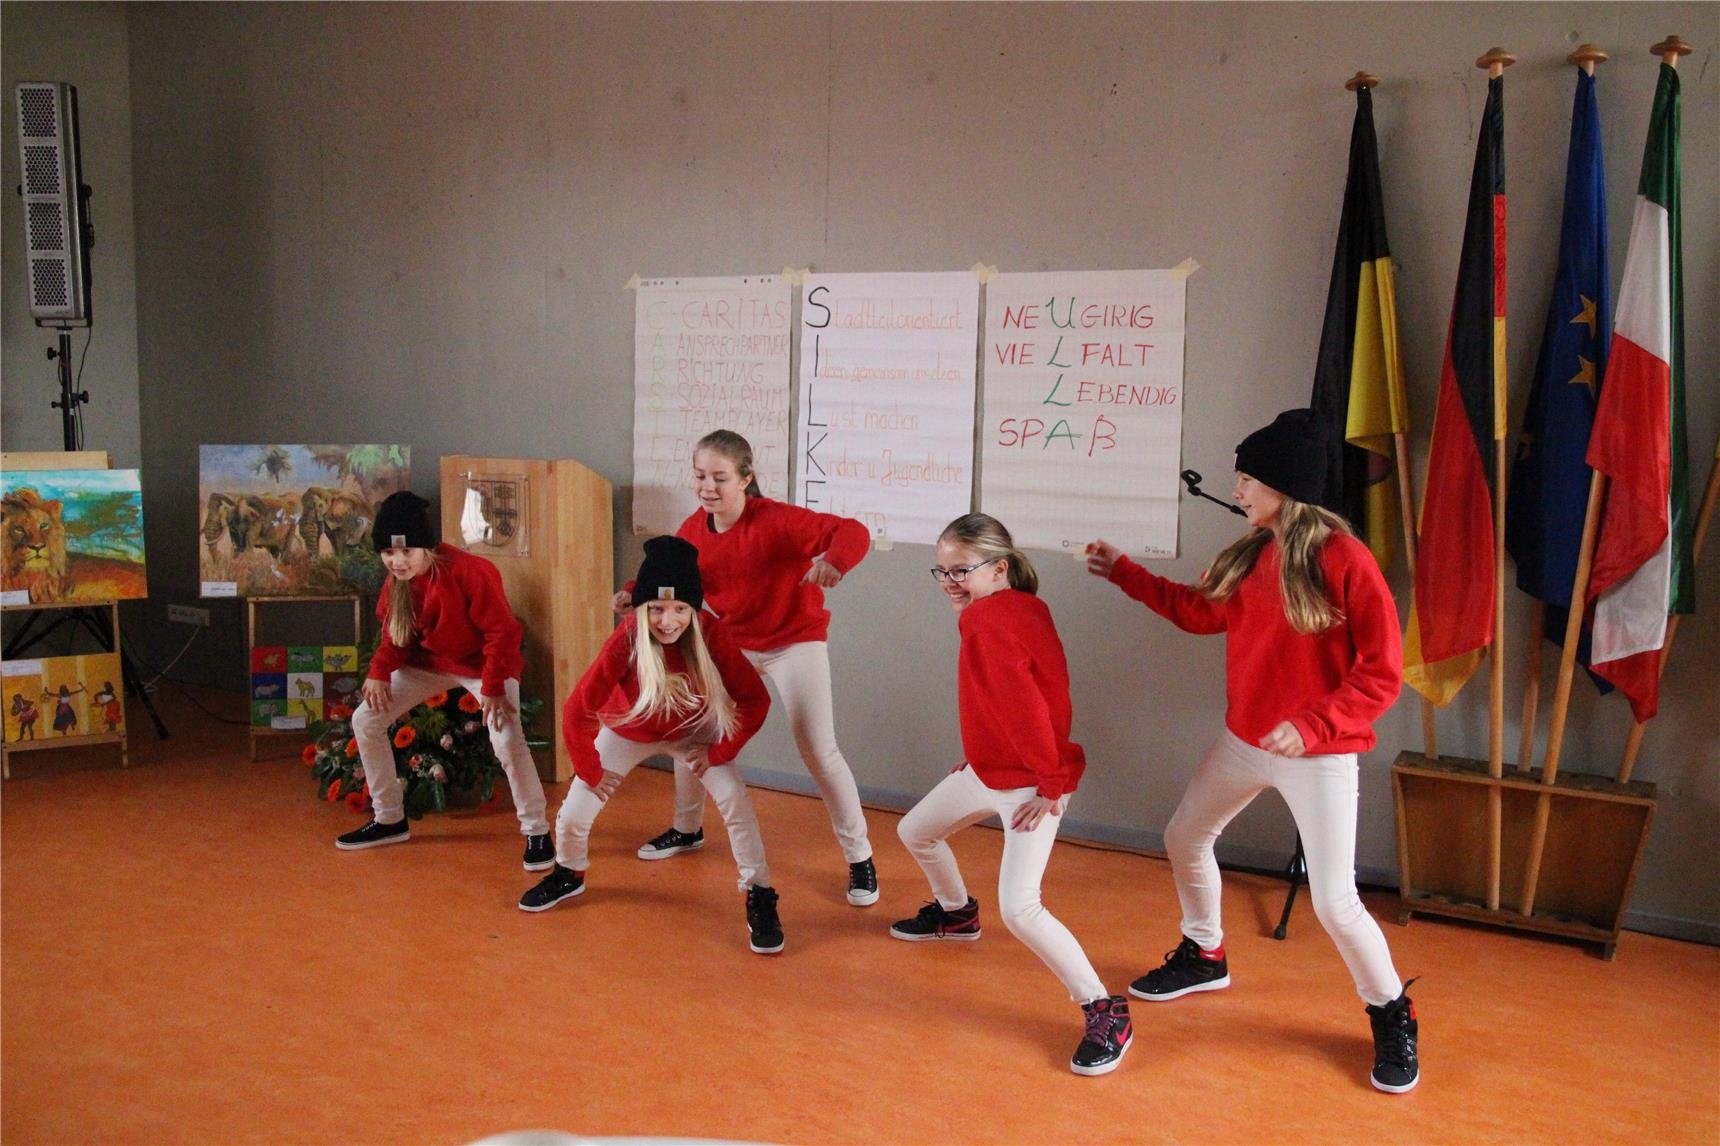 Tanzaufführung im Jugend- und Stadtteilhaus Schicksbaum, Innenansicht mit mehreren jungen Tänzerinnen in Aktion, alle haben rote Pullover an 